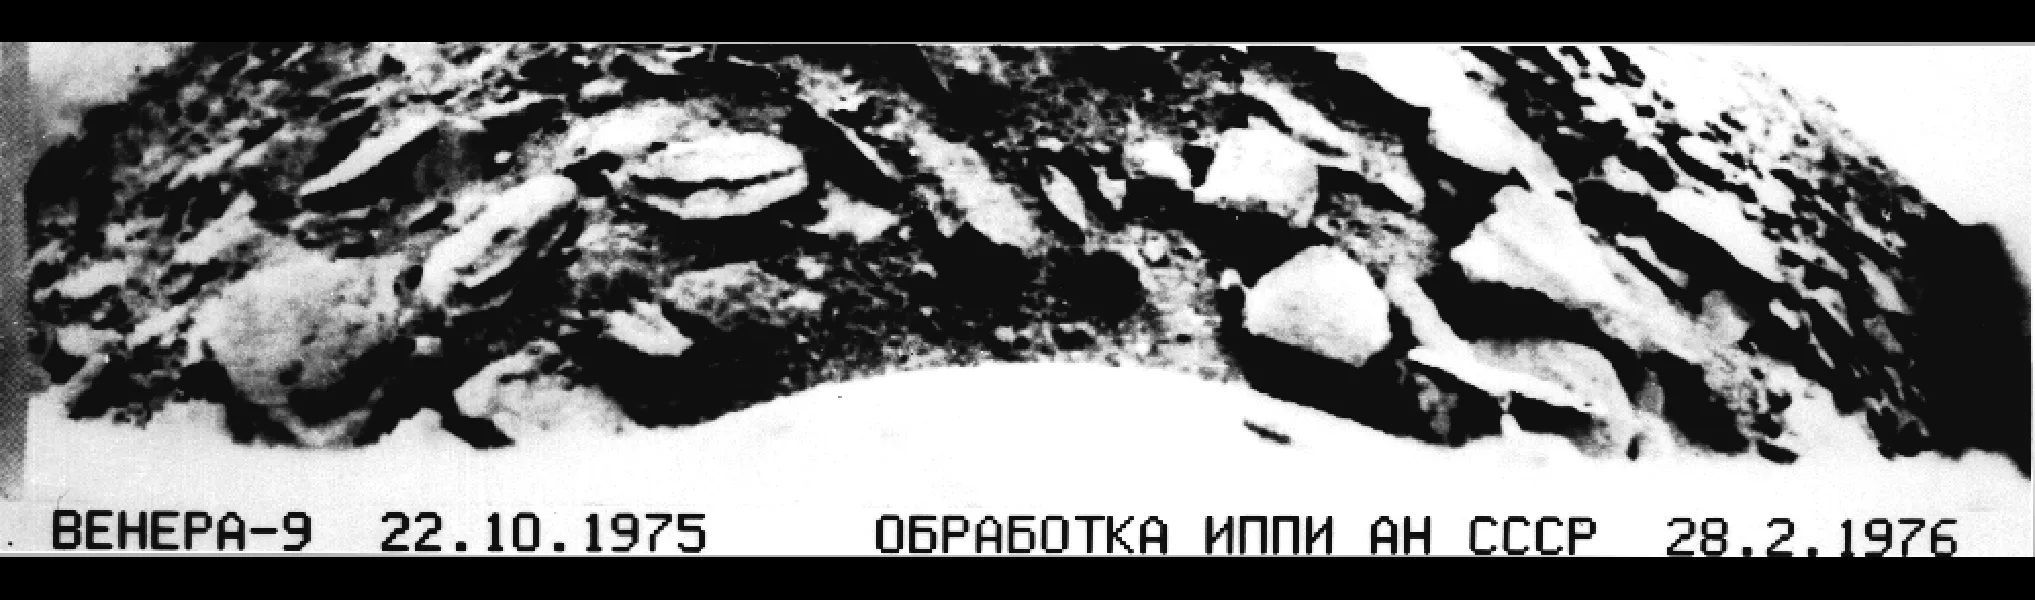 Nach der Landung 1975 fotografierte die sowjetische Sonde Venera 9 Steine auf der heißen Venusoberfläche - das erste Bild einer anderen Planeten-Oberfläche.